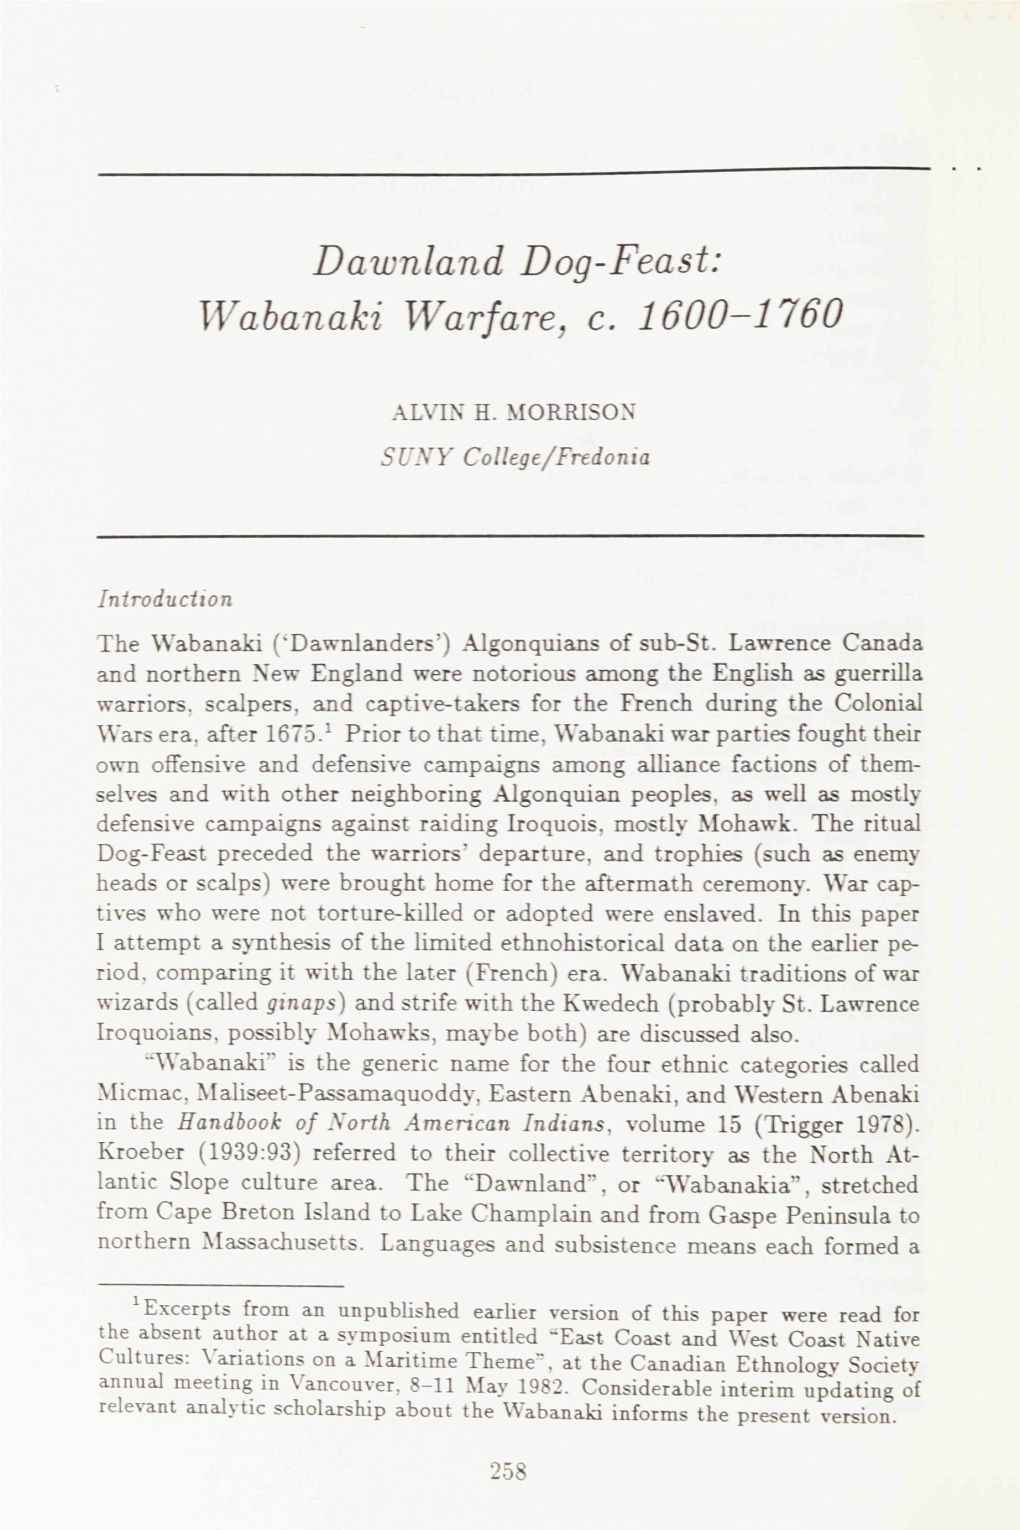 Dawnland Dog-Feast: Wabanaki Warfare, C. 1600-1760